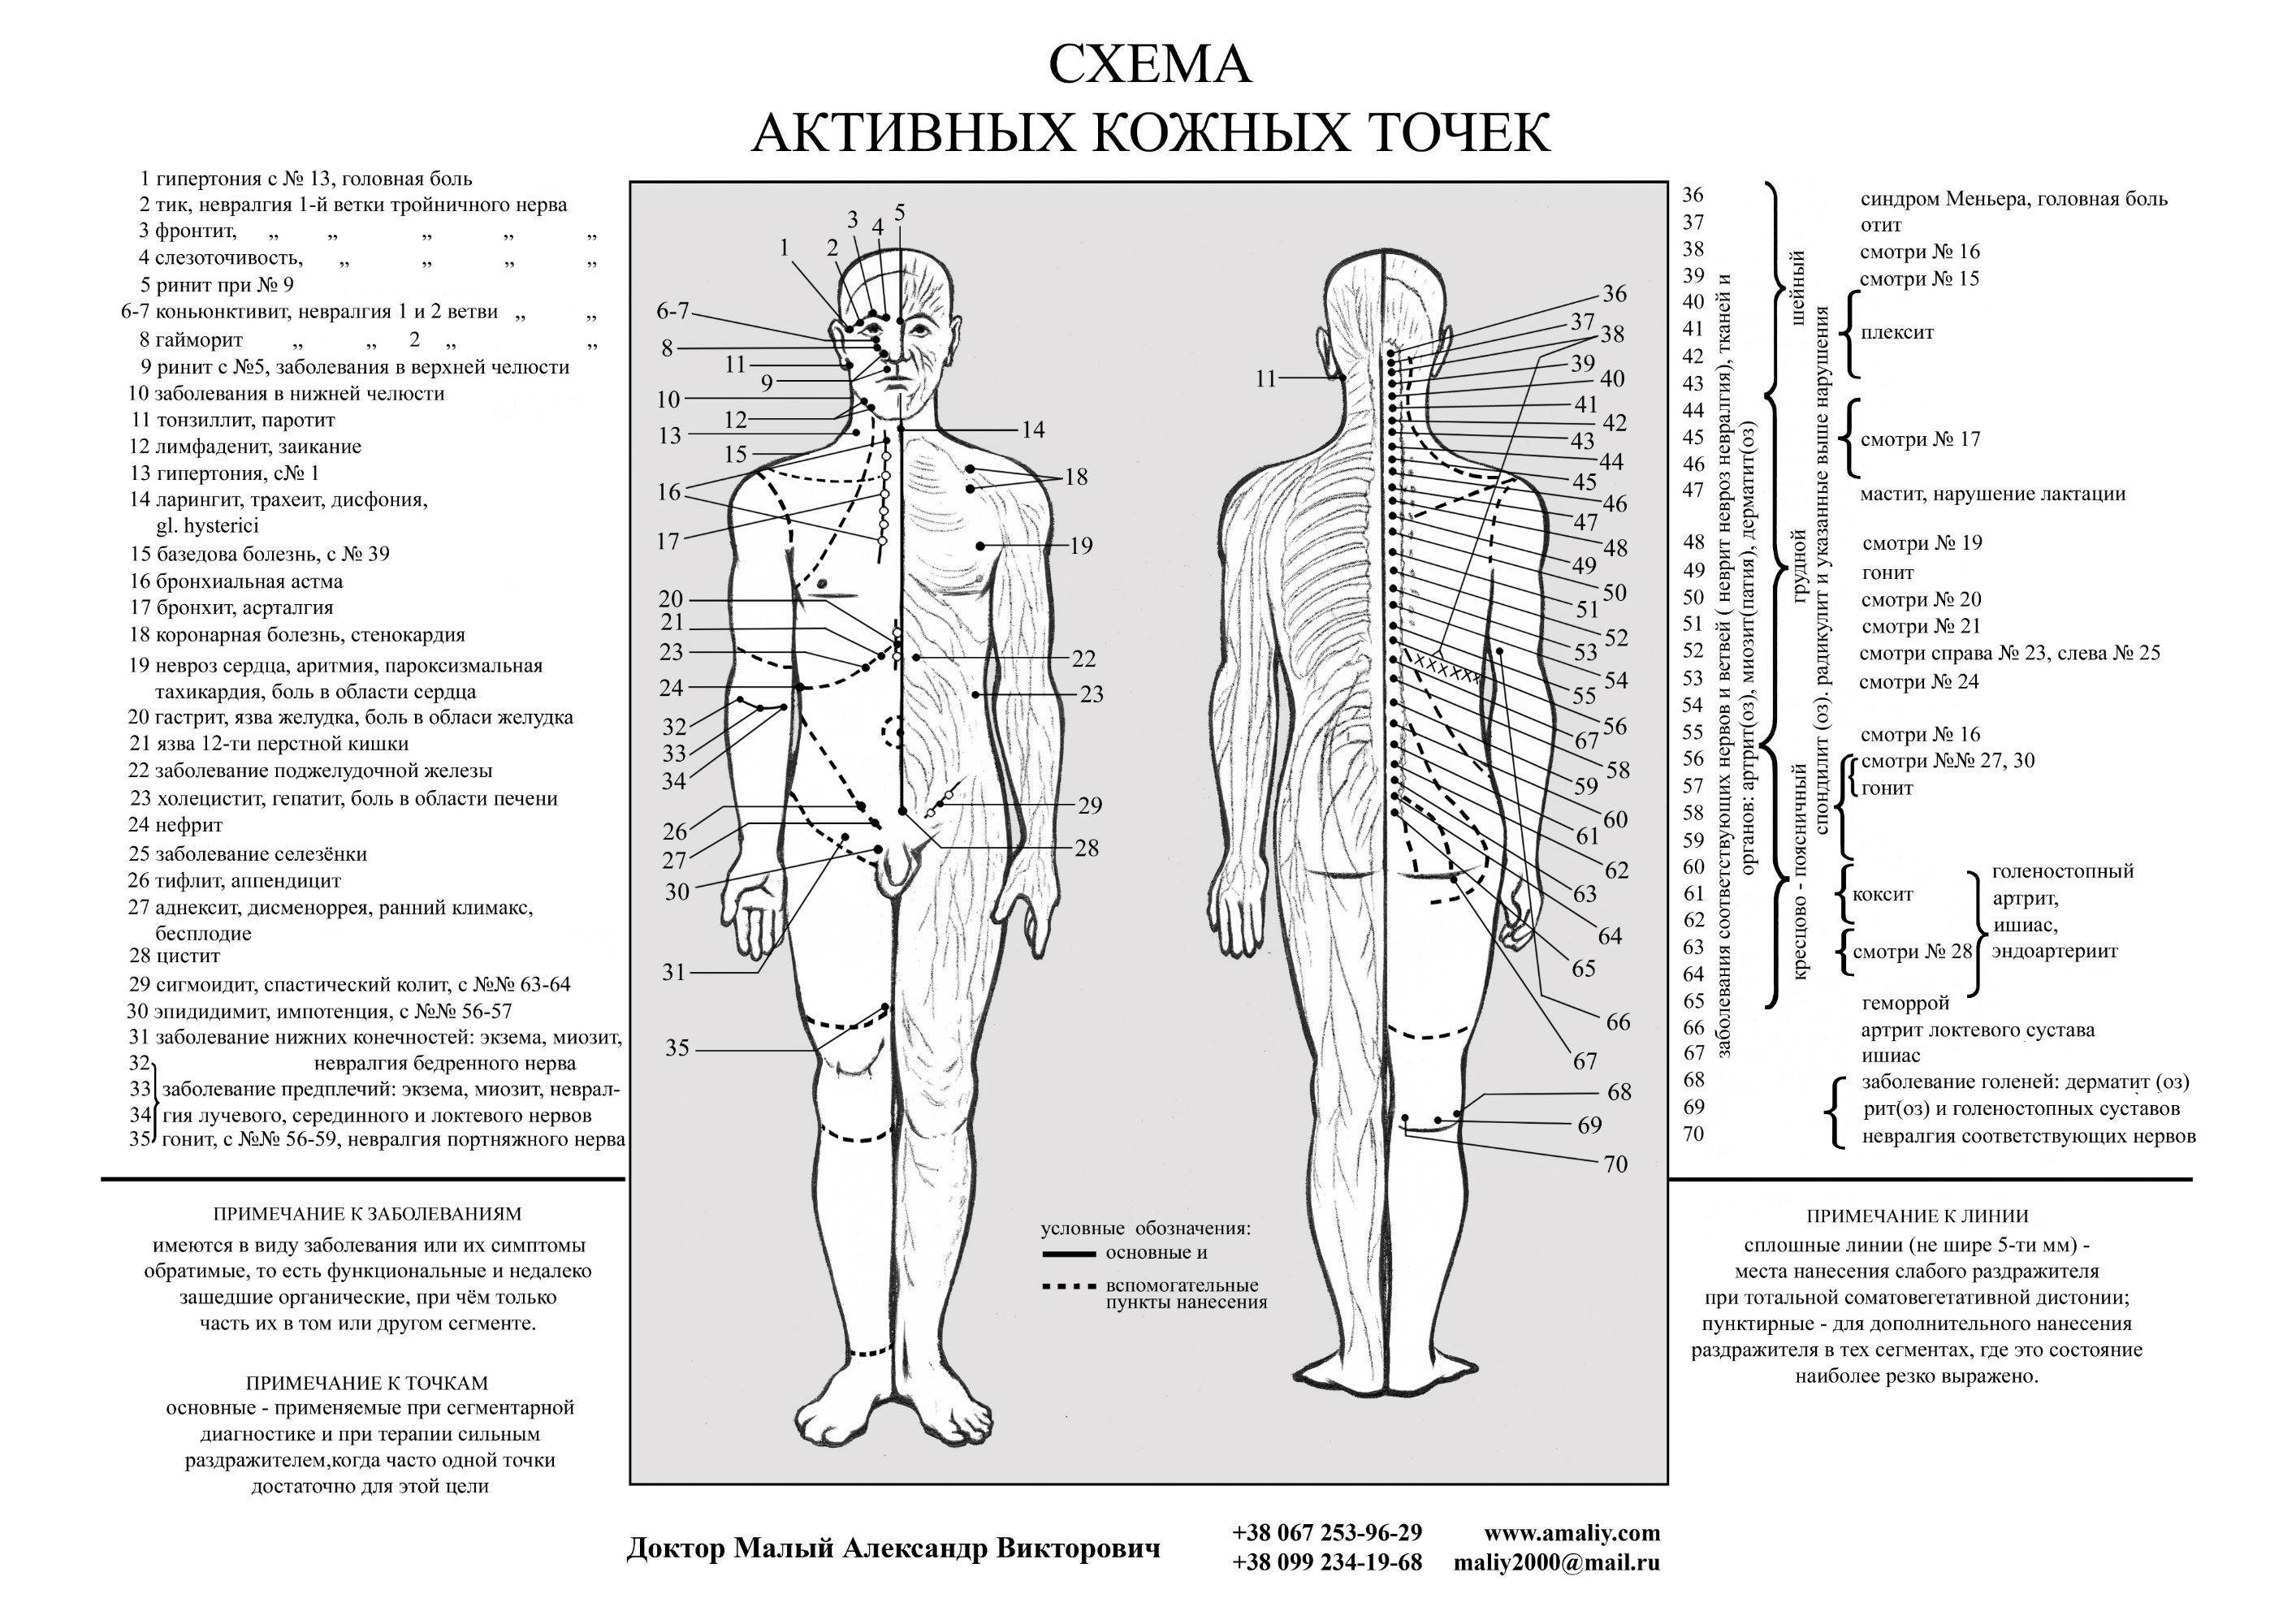 Подробные схемы точек ужаливания в апитерапии (в домашних условиях) | апитерапия.ru